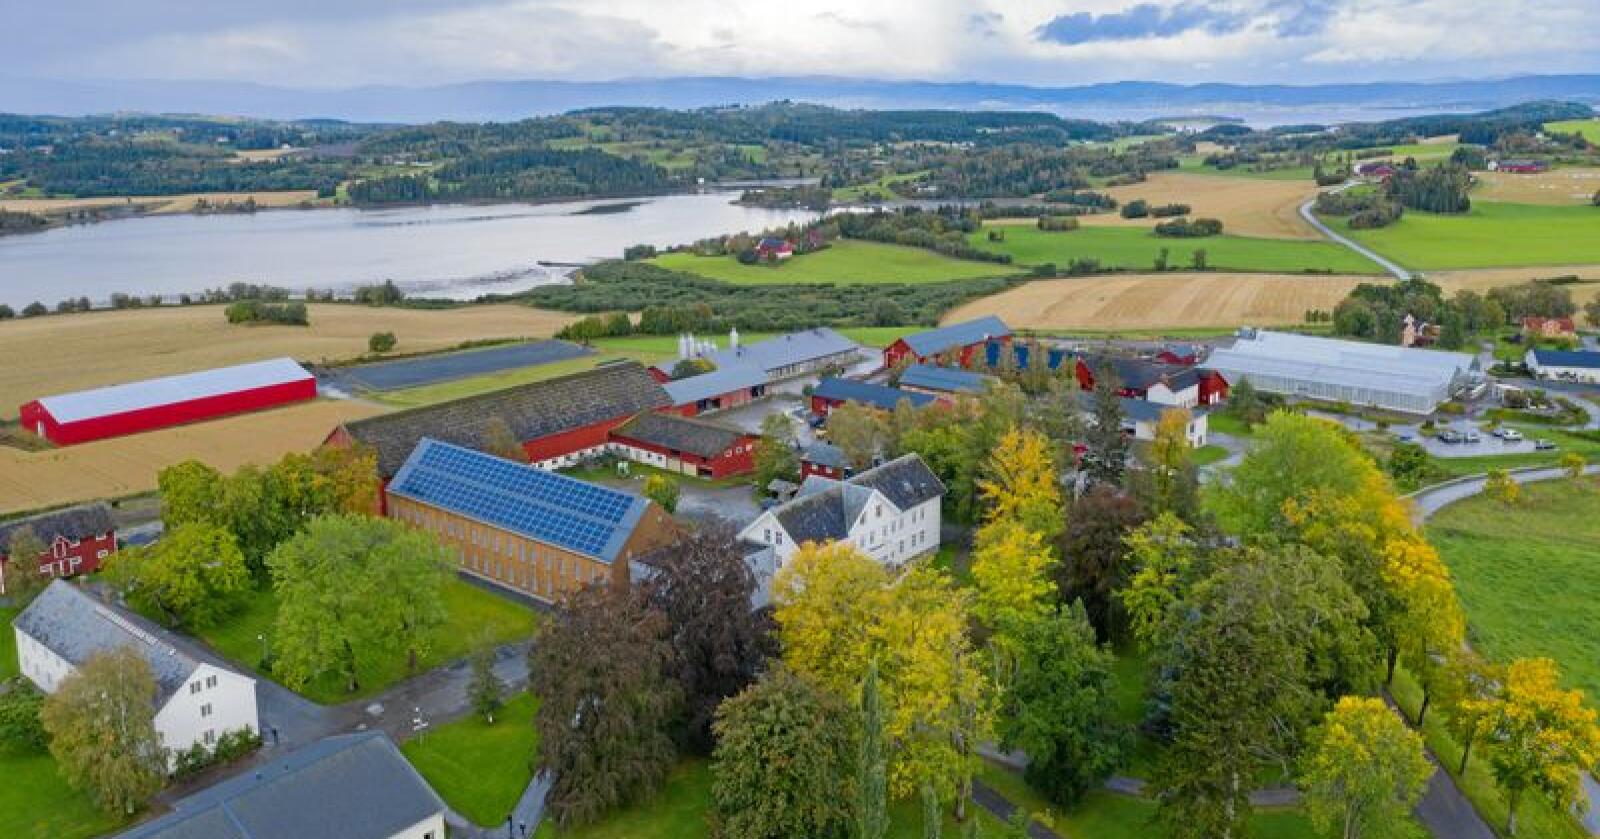 Mange bygg: Mære landbruksskole har et samlet byggeareal på om lag 18.000 kvadratmeter. Alle foto: Håvard Zeiner 